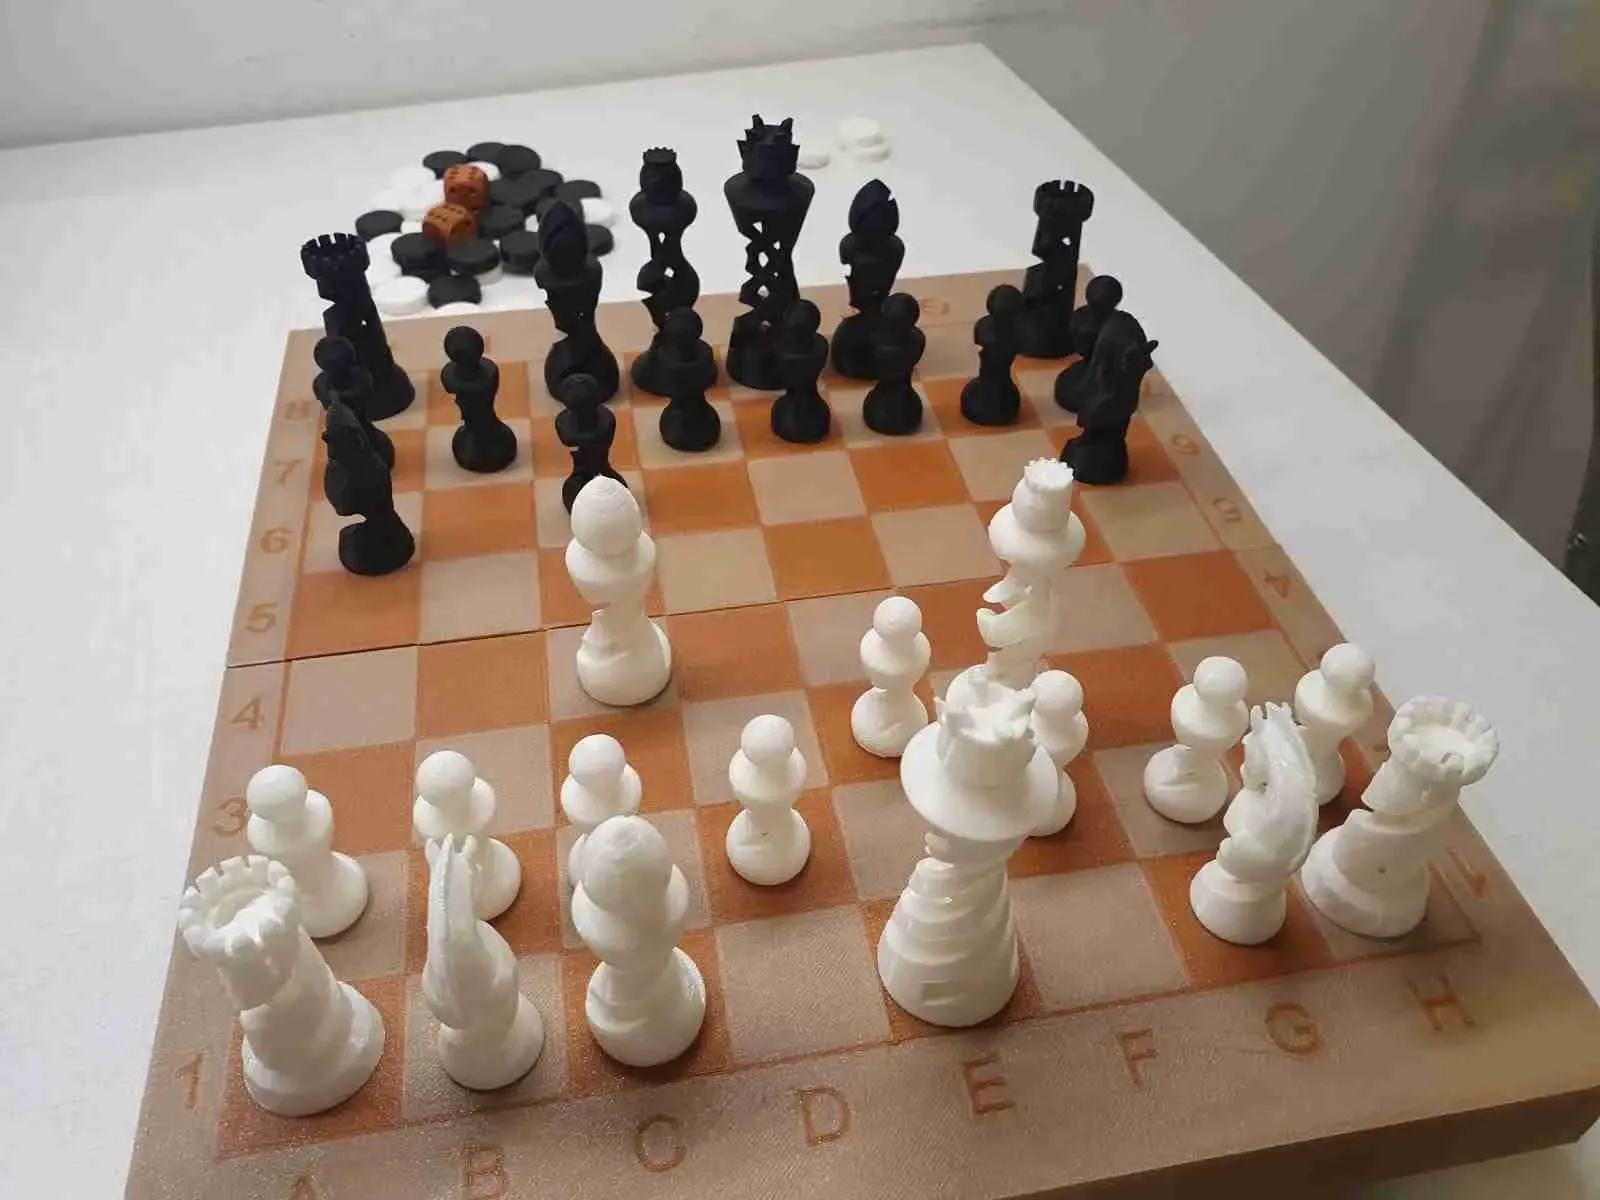 backgammon, checkers & chess board